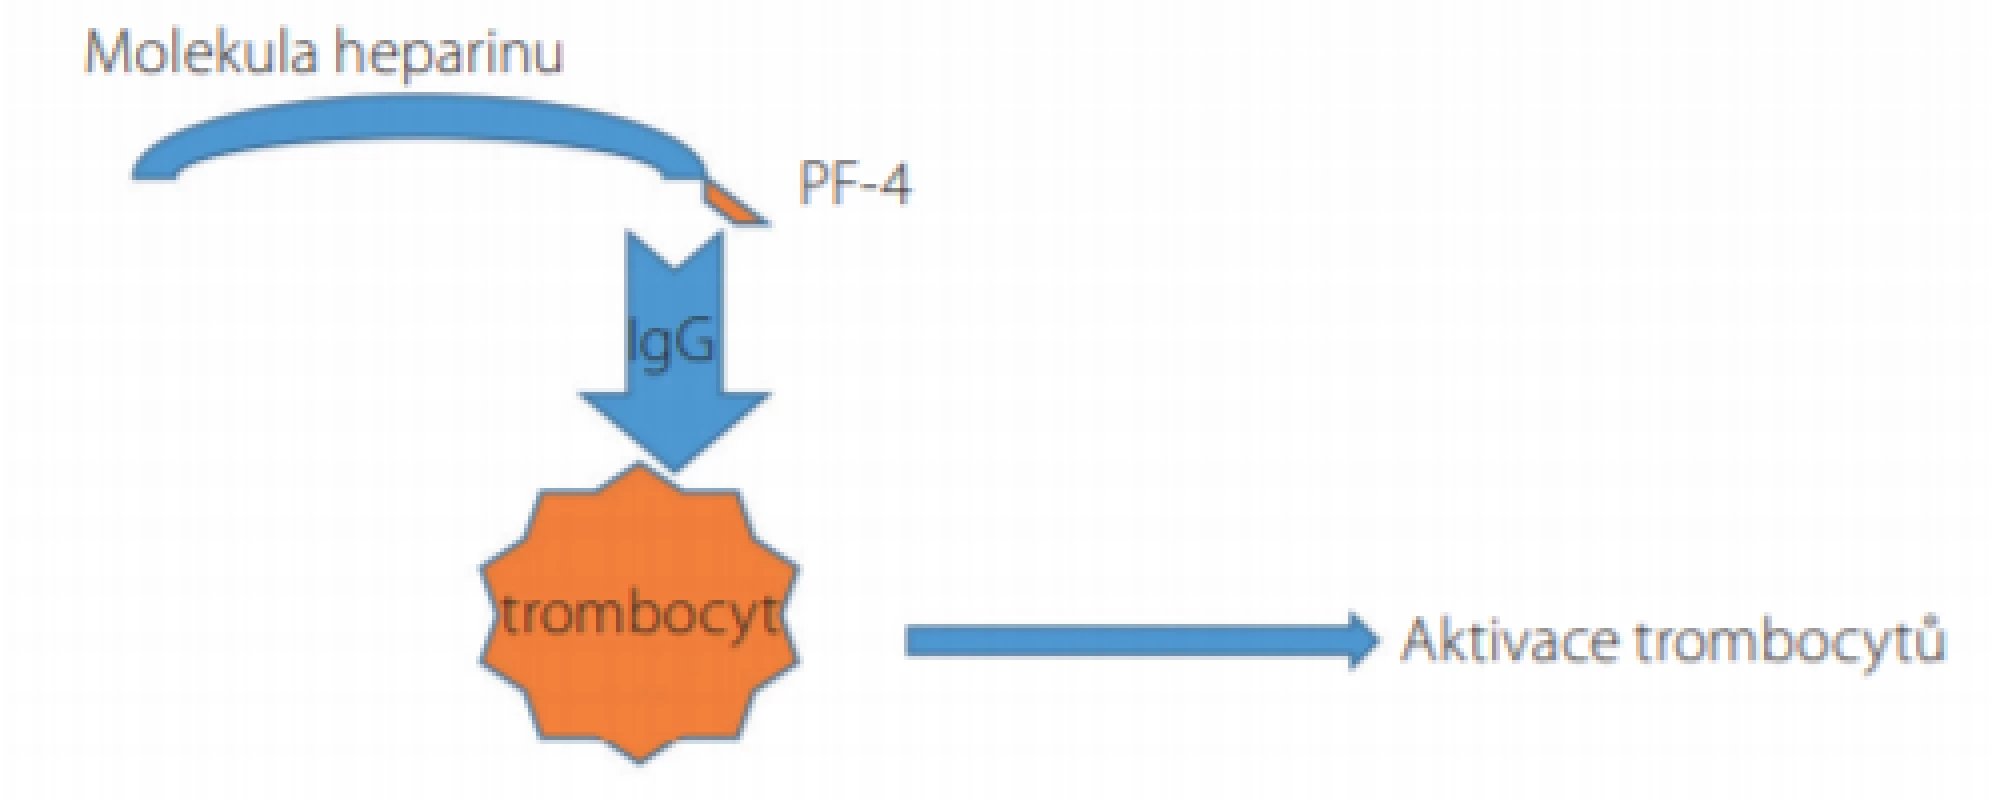 Mechanismus aktivace trombocytů a rozvoje trombocytopenie
u pacientů s heparinem indukovanou trombocytopenií (HIT)